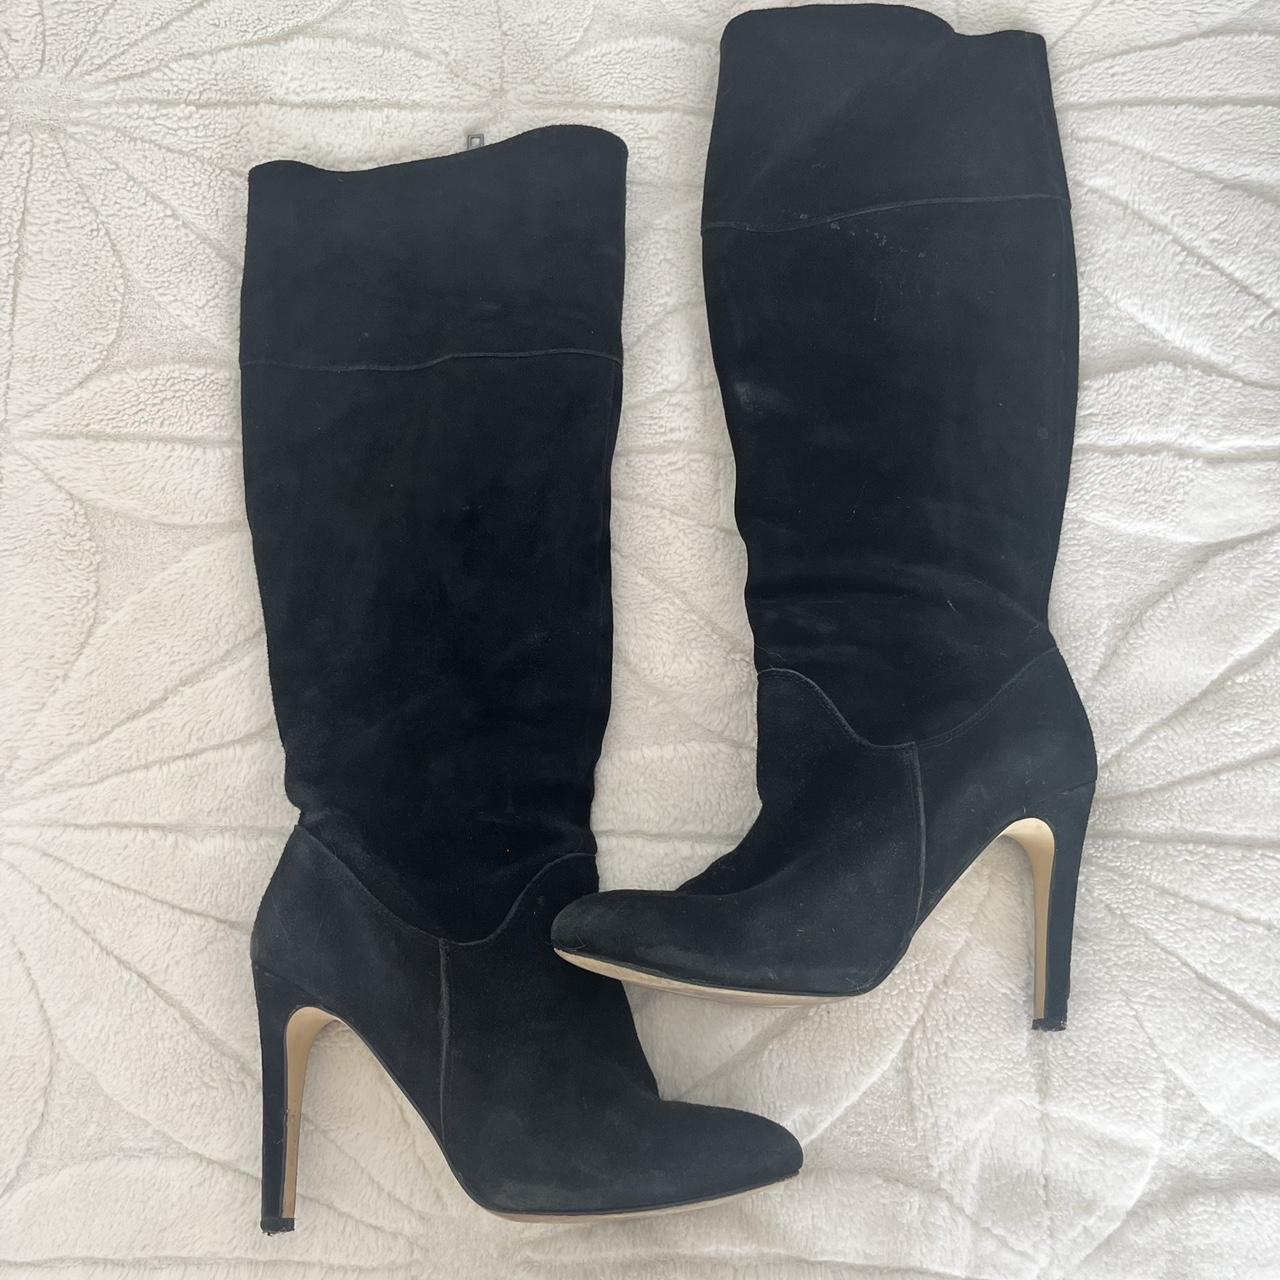 Black zip up heels size 6 1/2 - Depop